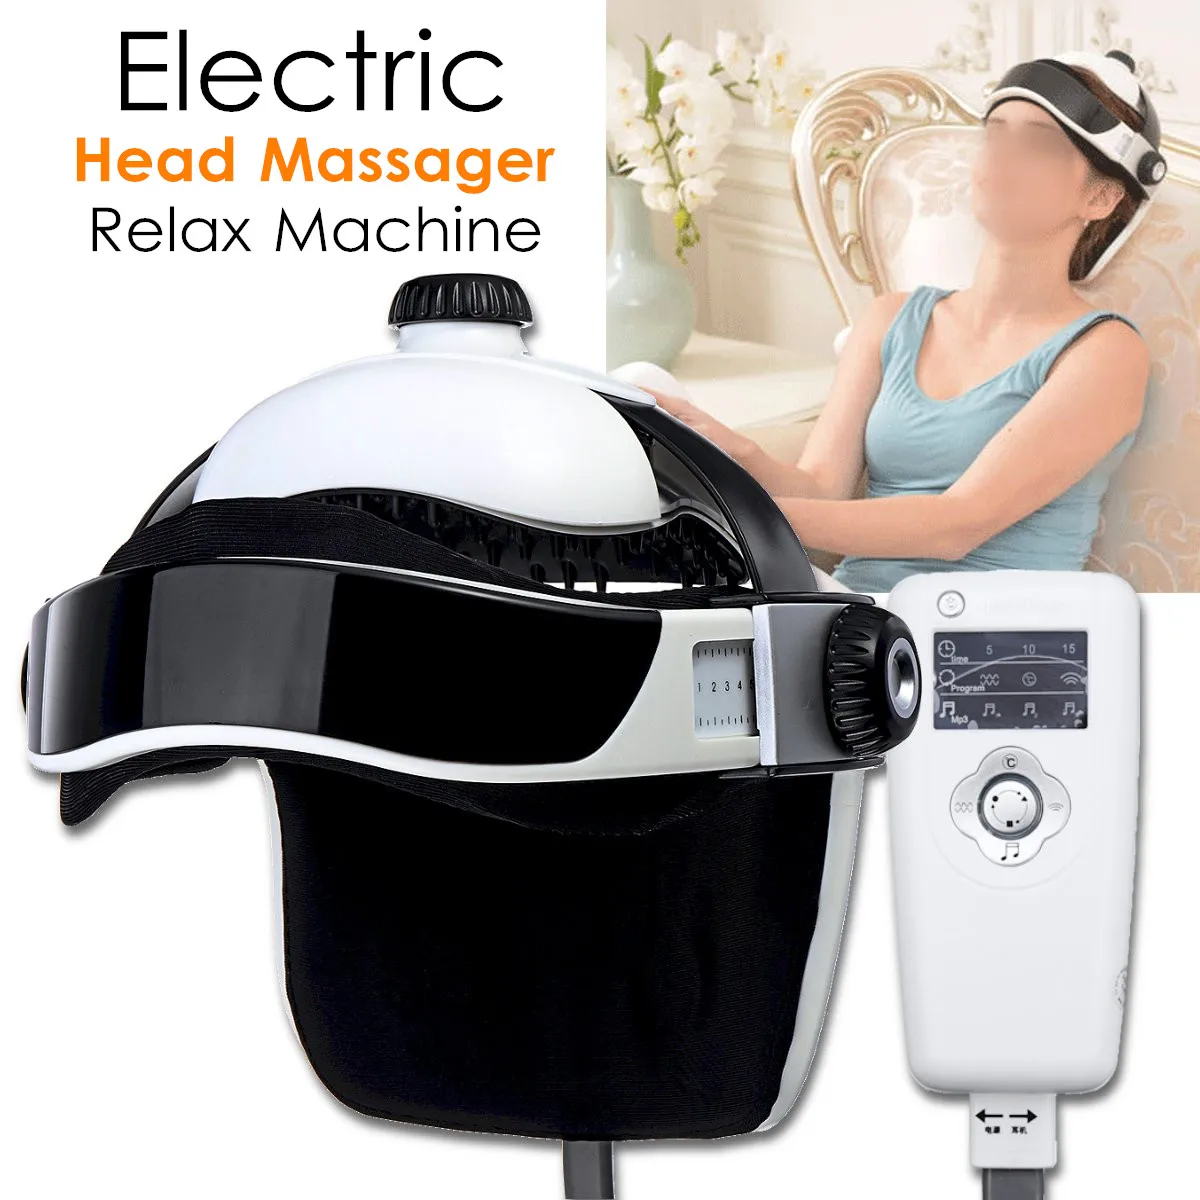 Электрический массаж головы машина давление воздушным потоком Вибрация Релаксация музыкальный шлем массажер акупунктурные точки физиотерапия комплект